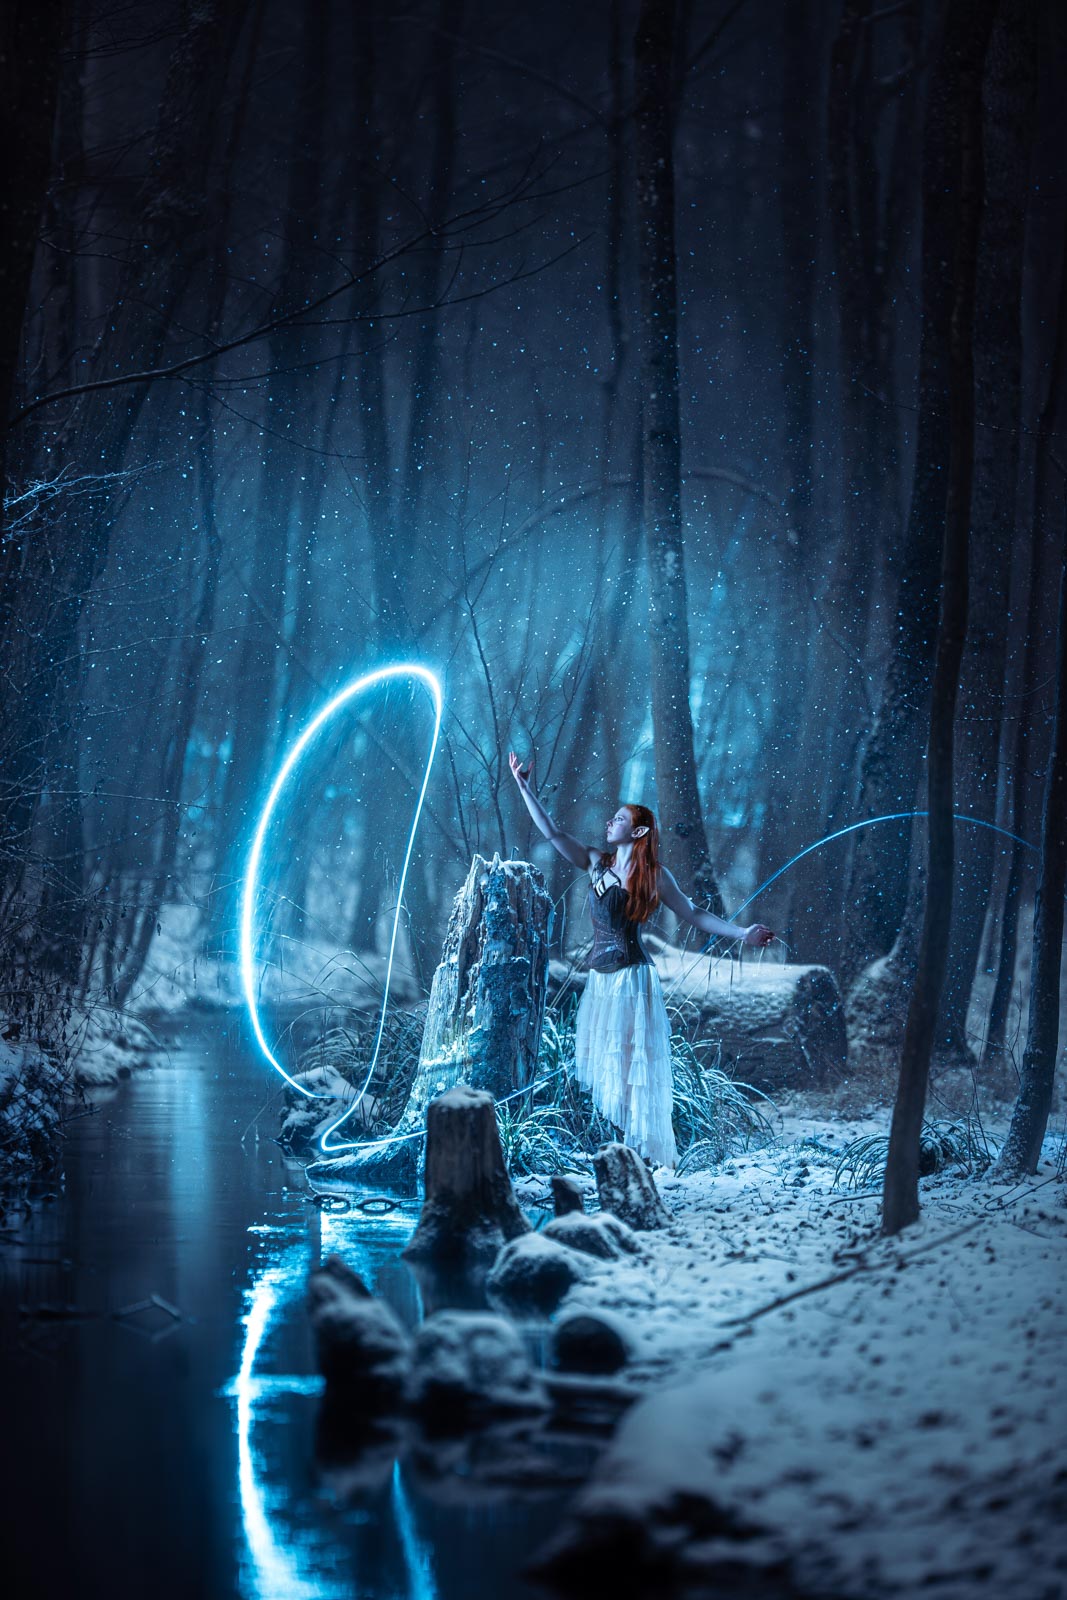 Fantasy / Cosplay Fotoshooting in München: Frau im Elfenkostüm steht nachts im Wald. Es schneit und ein blauer Lichtschweif beleuchtet die Szene.